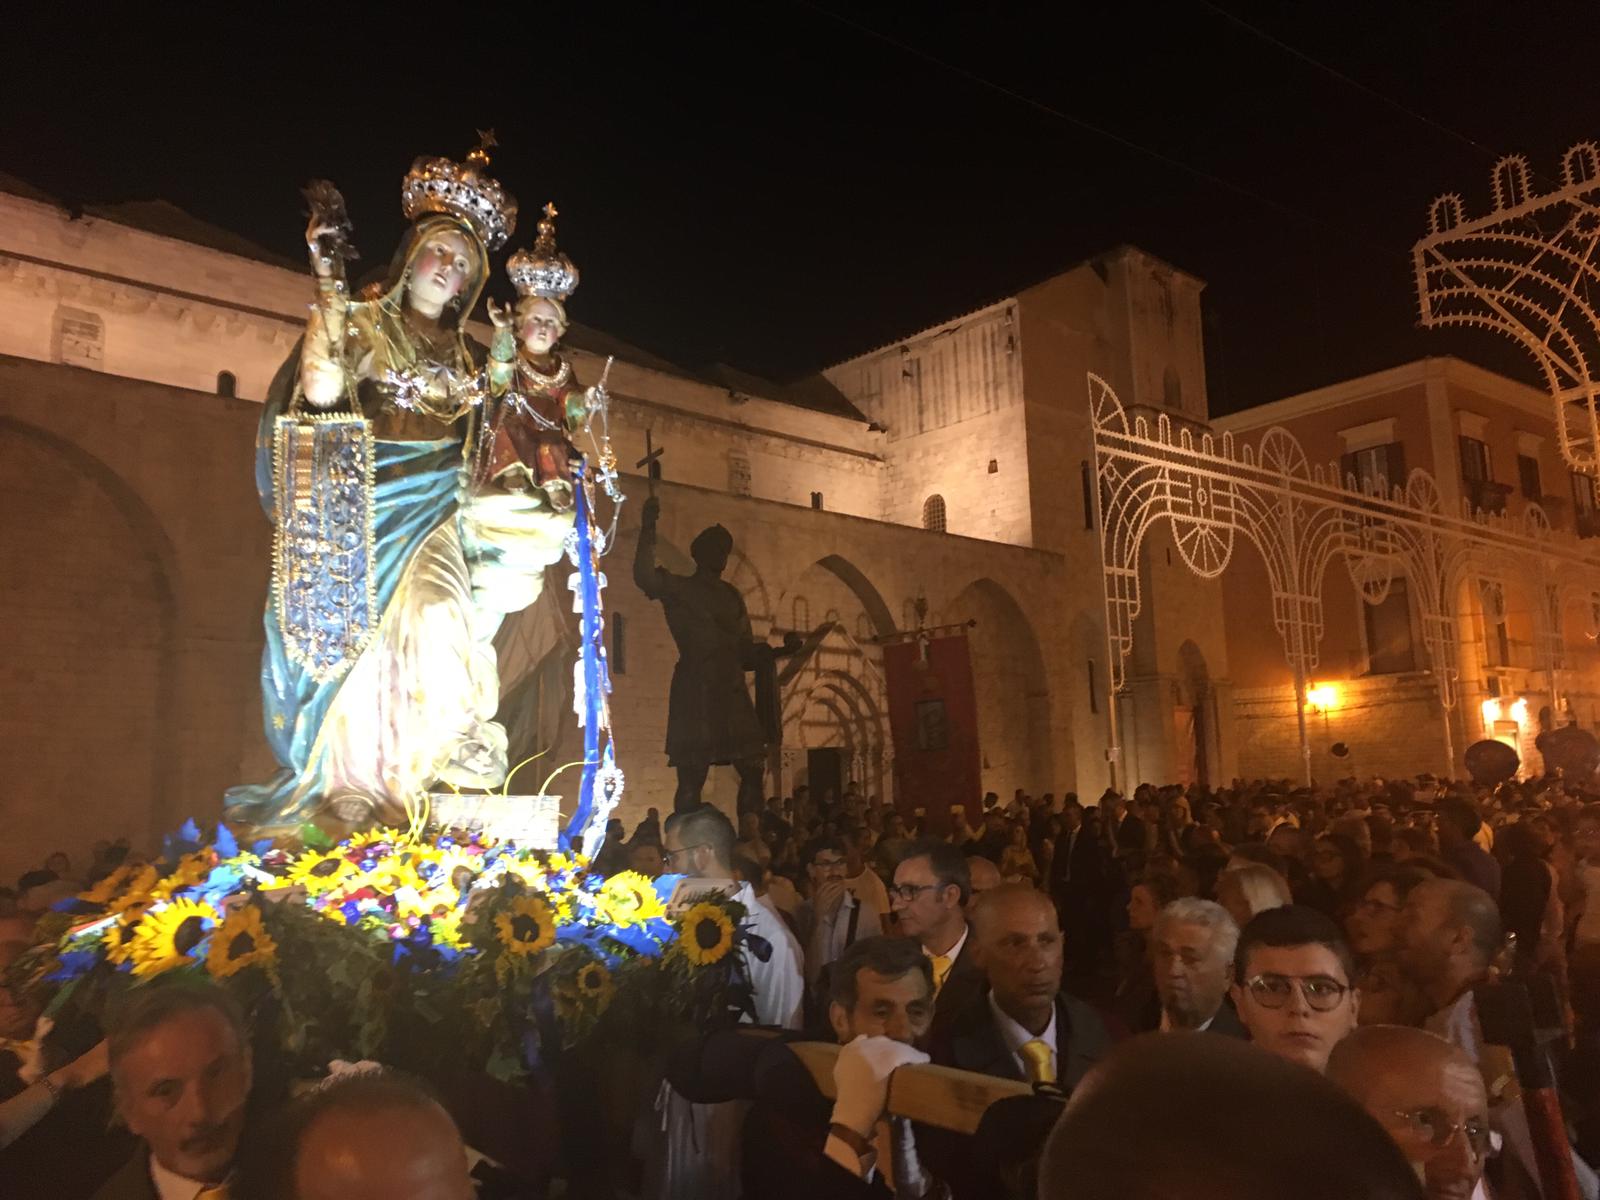 Barletta, l’antico quartiere delle Sette Rue si veste a festa per celebrare la Madonna del Pozzo. Dal 9 settembre al via il triduo mariano